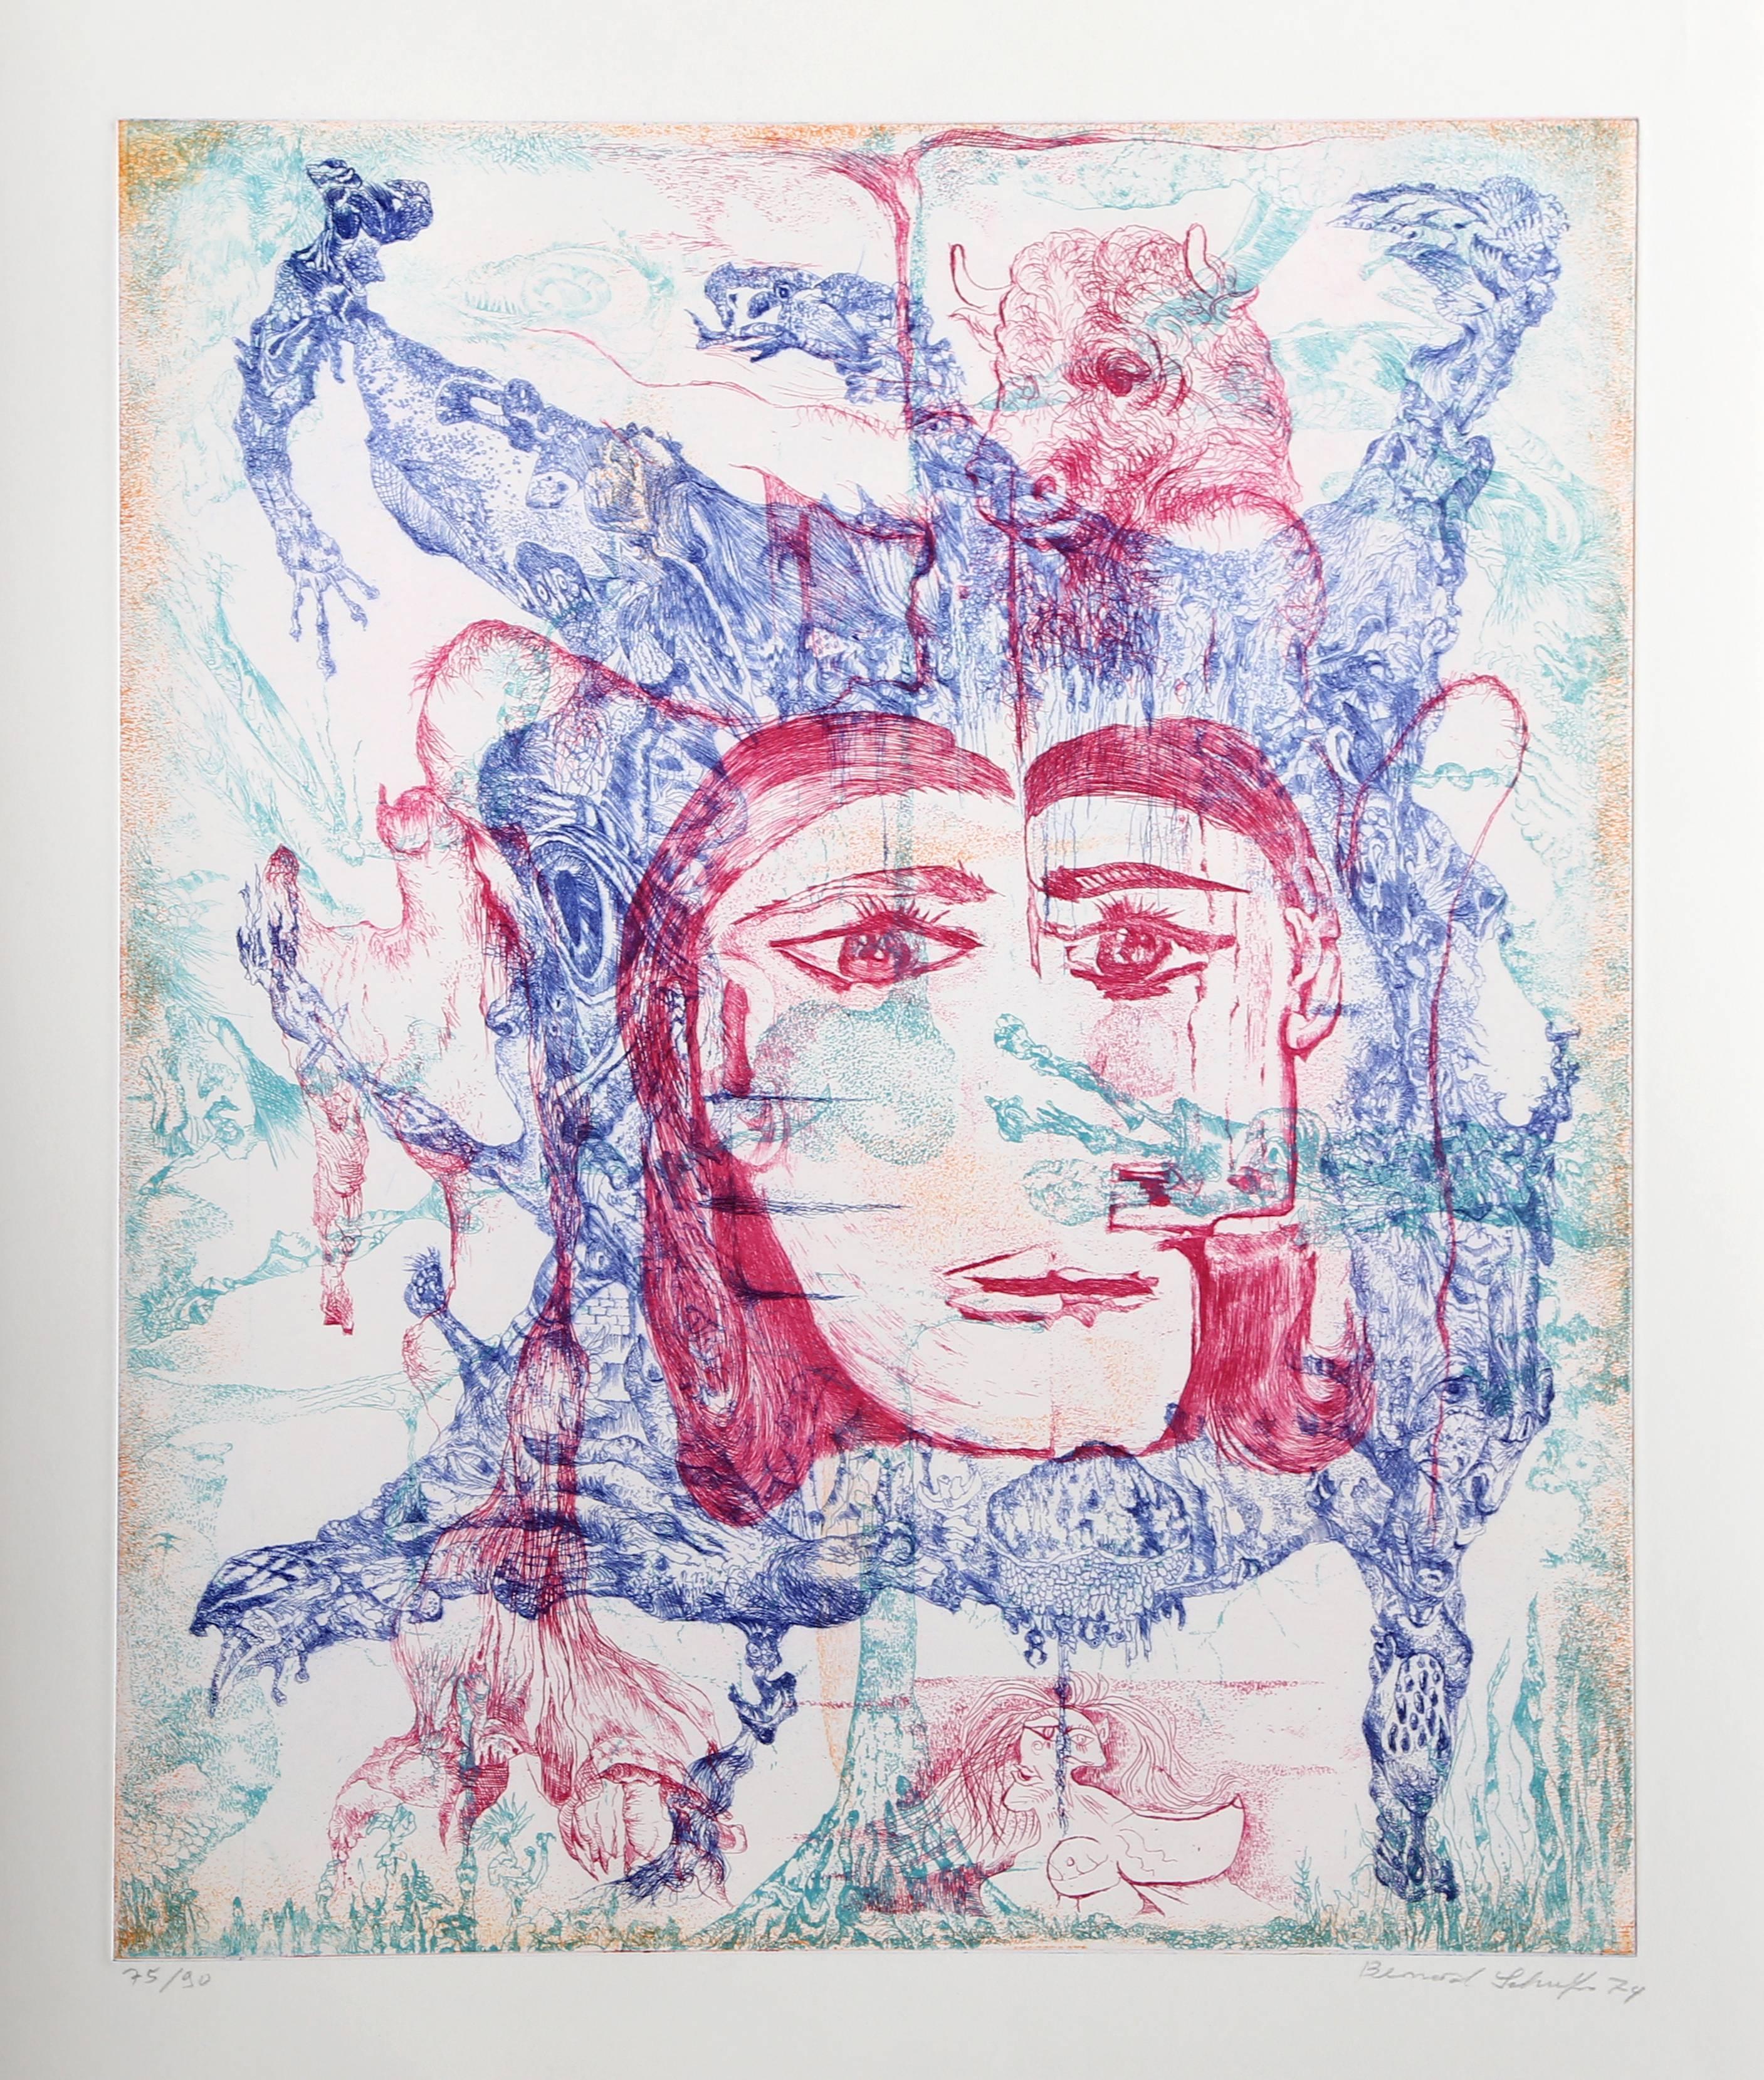 Artistics : Bernard Schultz, Allemand (1915 - 2005)
Titre : Hommage à Picasso
Année : 1973
Moyen : Gravure, signée et numérotée au crayon
Edition : 75/90
Taille de l'image : 21,5 x 17,5
Taille : 30 x 21 in. (76.2 x 53.34 cm)